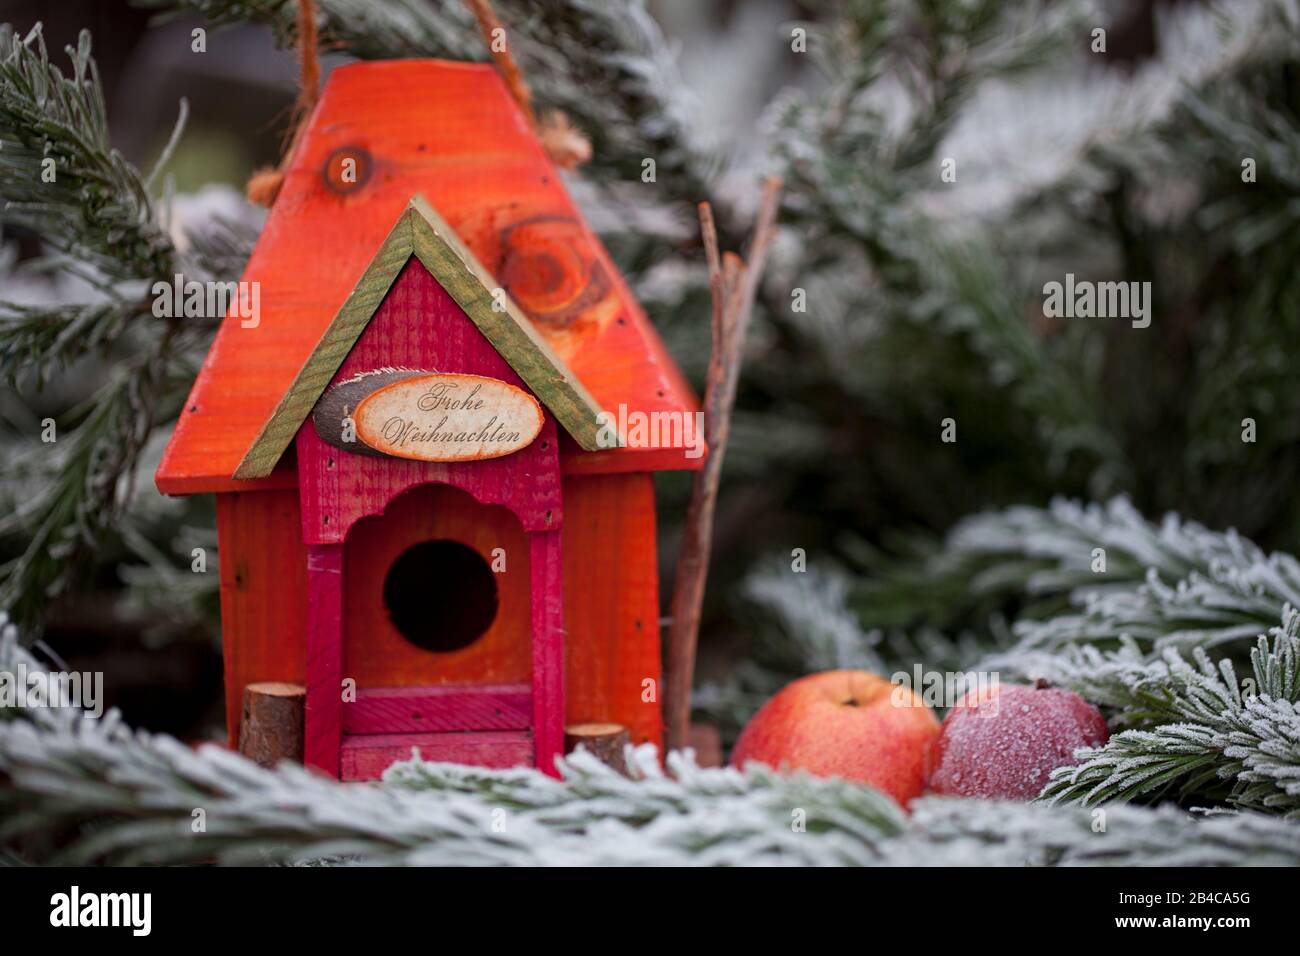 Jolie maison d'oiseaux rouge et orange avec panneau, pommes et branches de sapin givrées, signe dit Joyeux Noël en allemand Banque D'Images